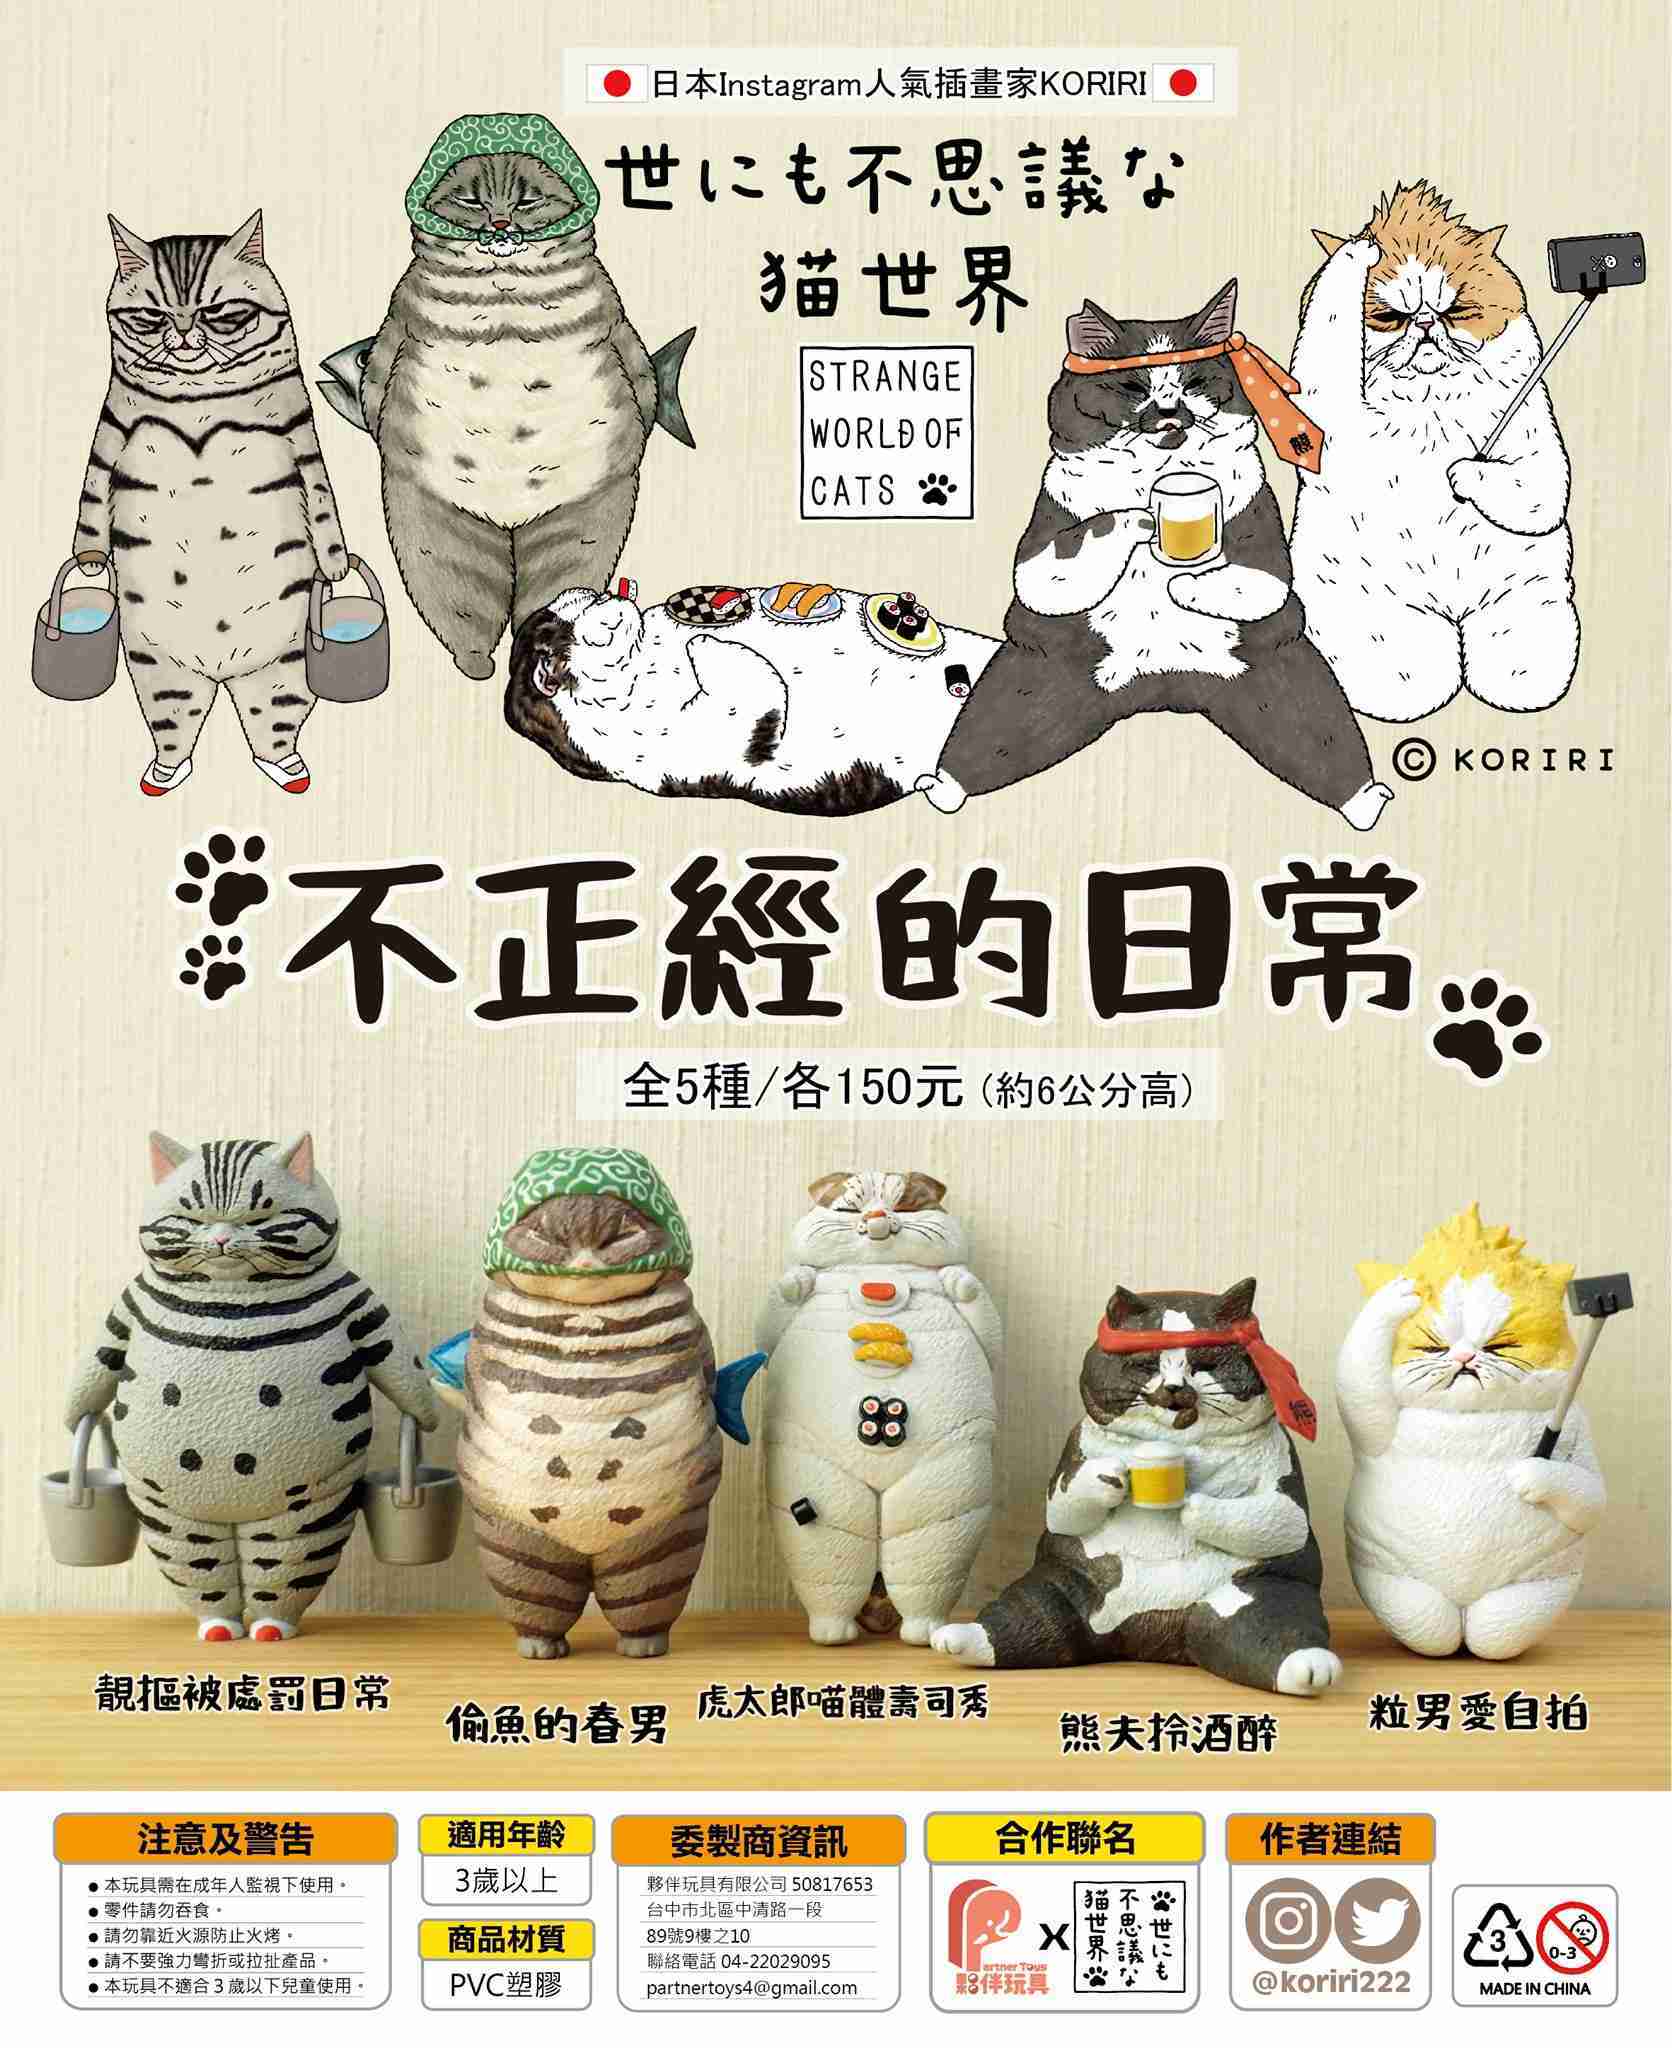 【玩具之森】《預購/21年01月》夥伴玩具✕不可思議的貓世界 不可思議的貓世界-不正經的日常-扭蛋 轉蛋(一套5款出售)